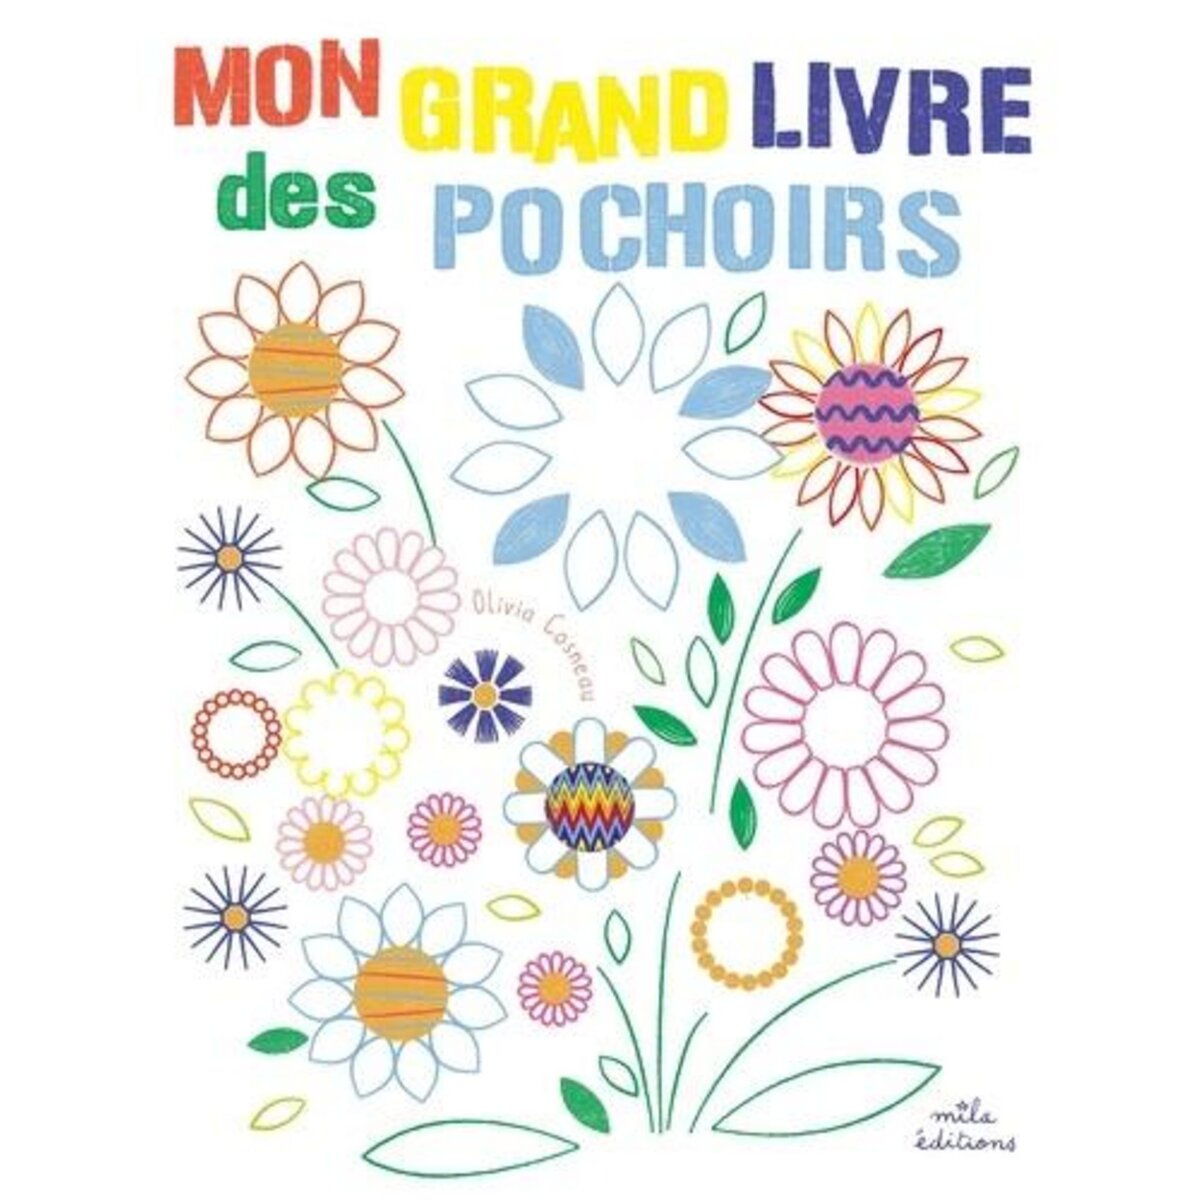  MON GRAND LIVRE DES POCHOIRS, Cosneau Olivia